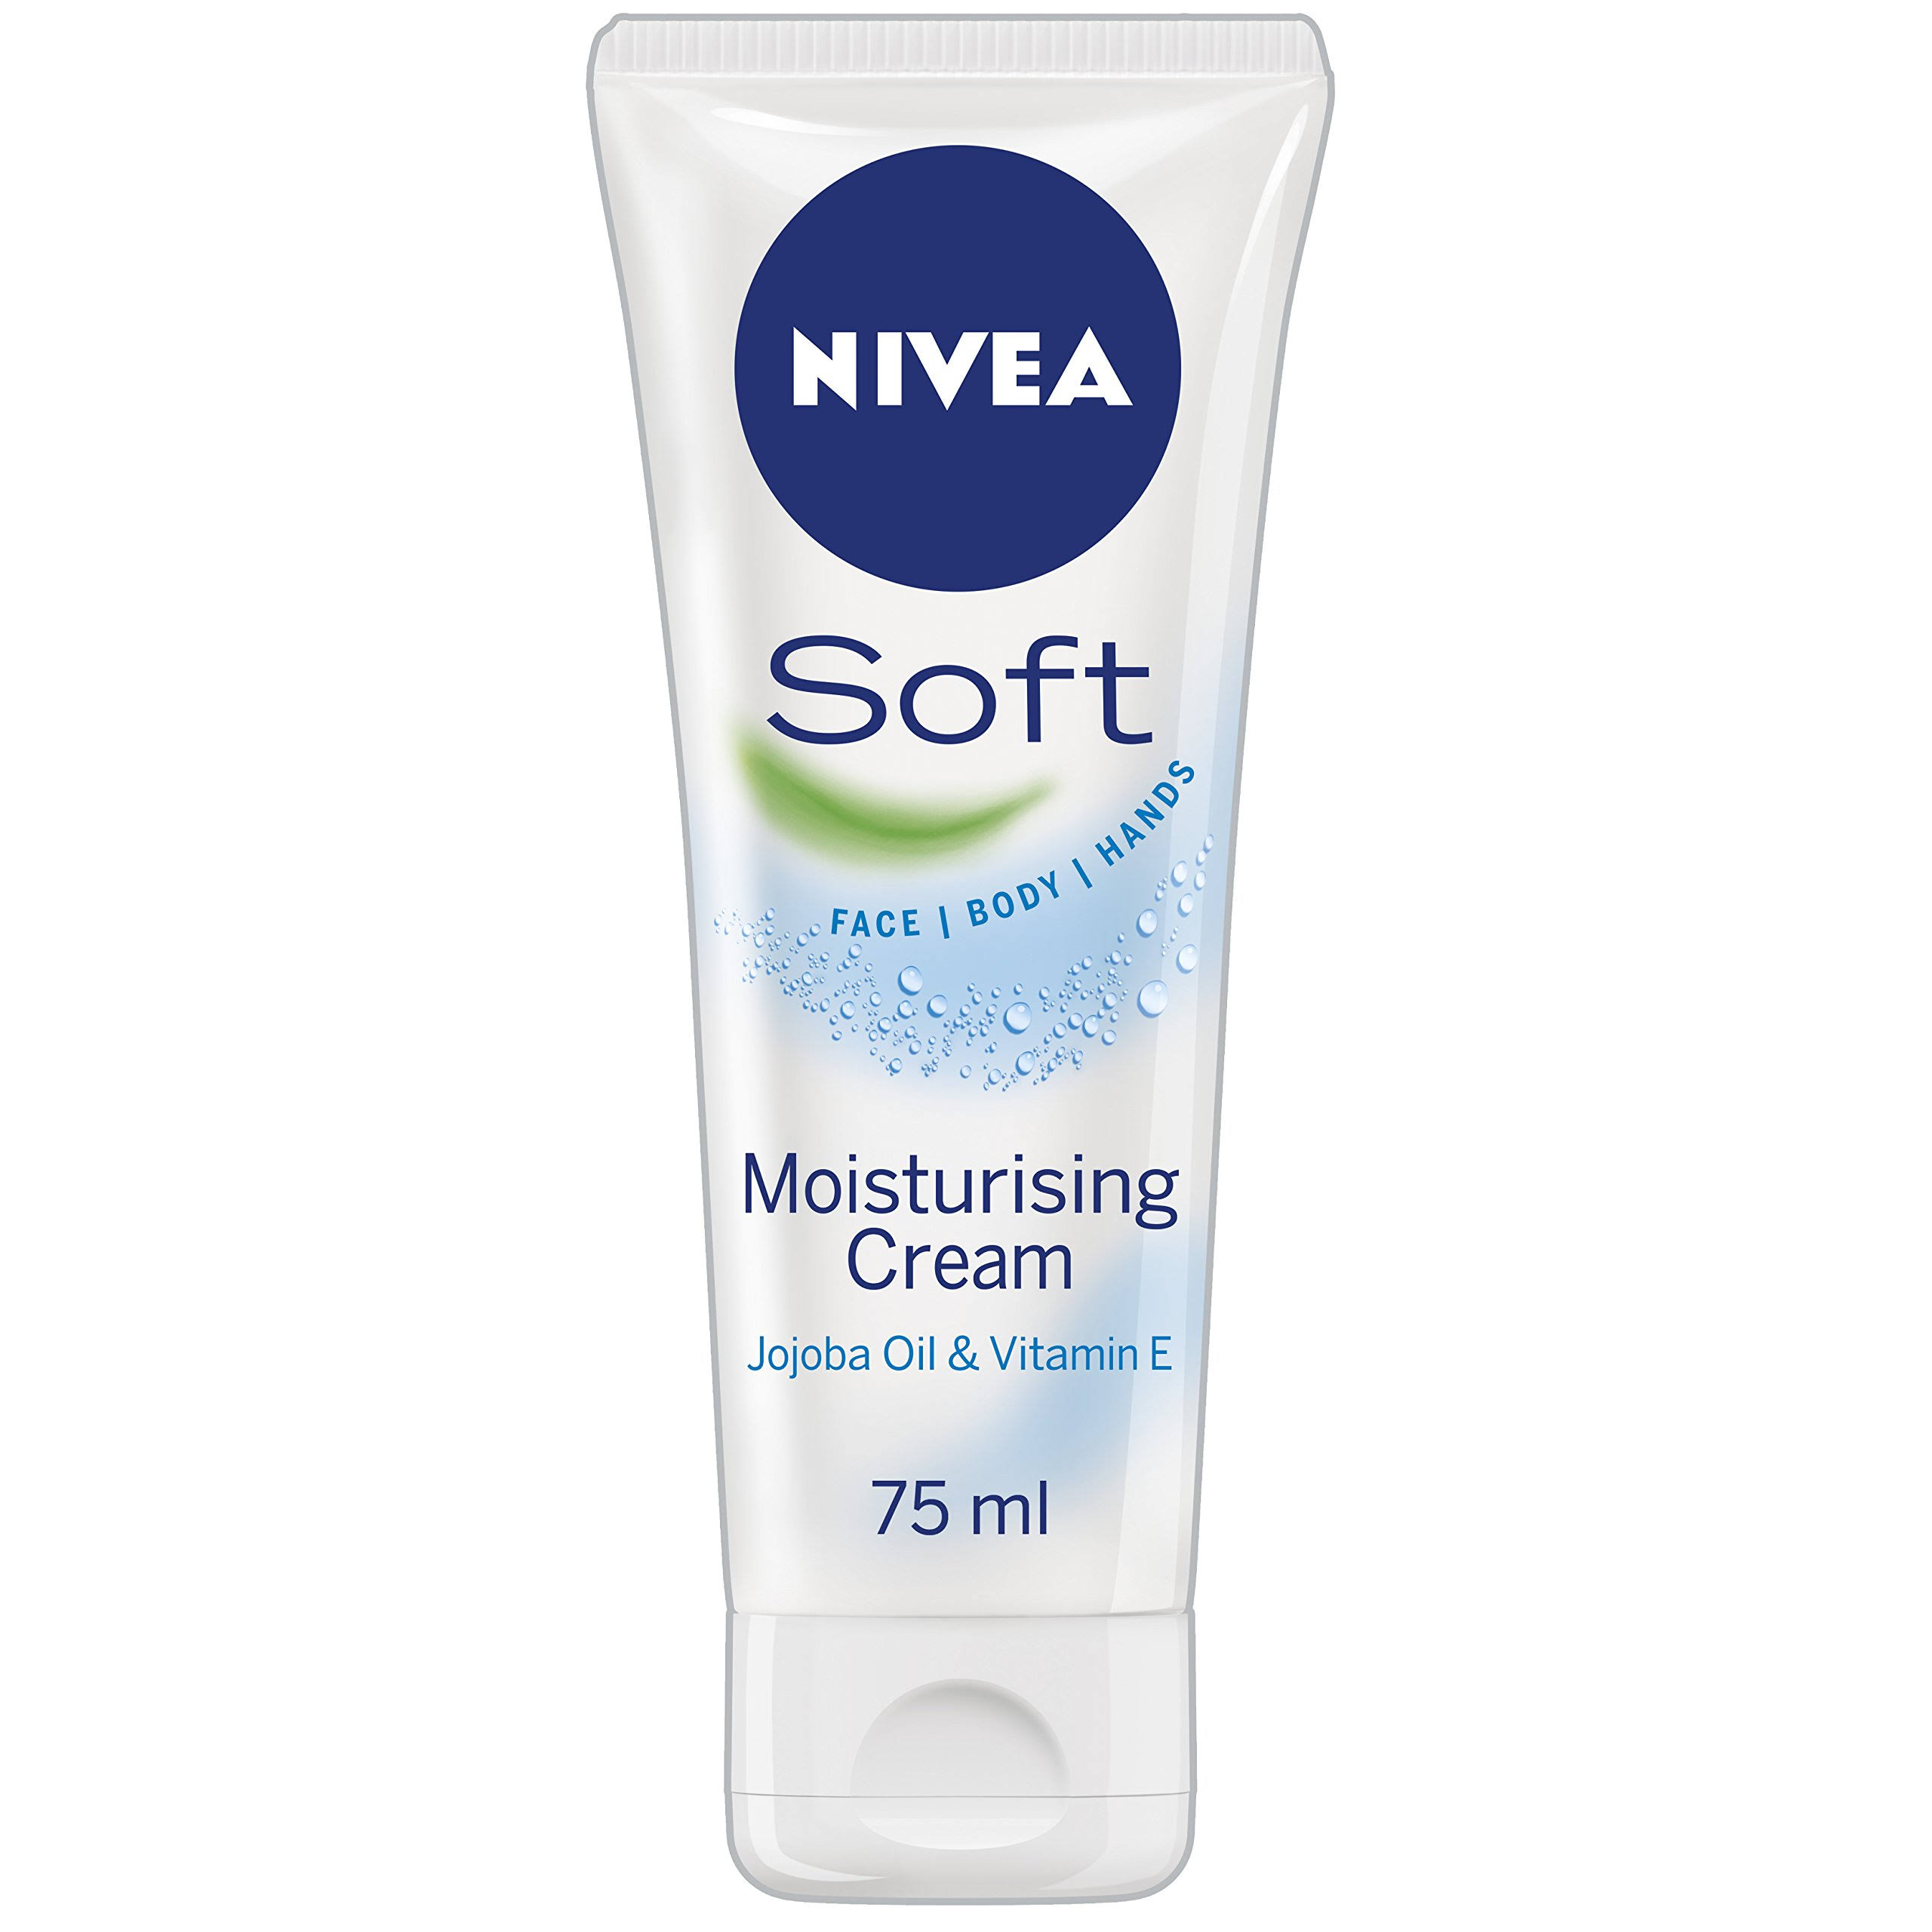 Nivea Soft Moisturising Cream - 75ml